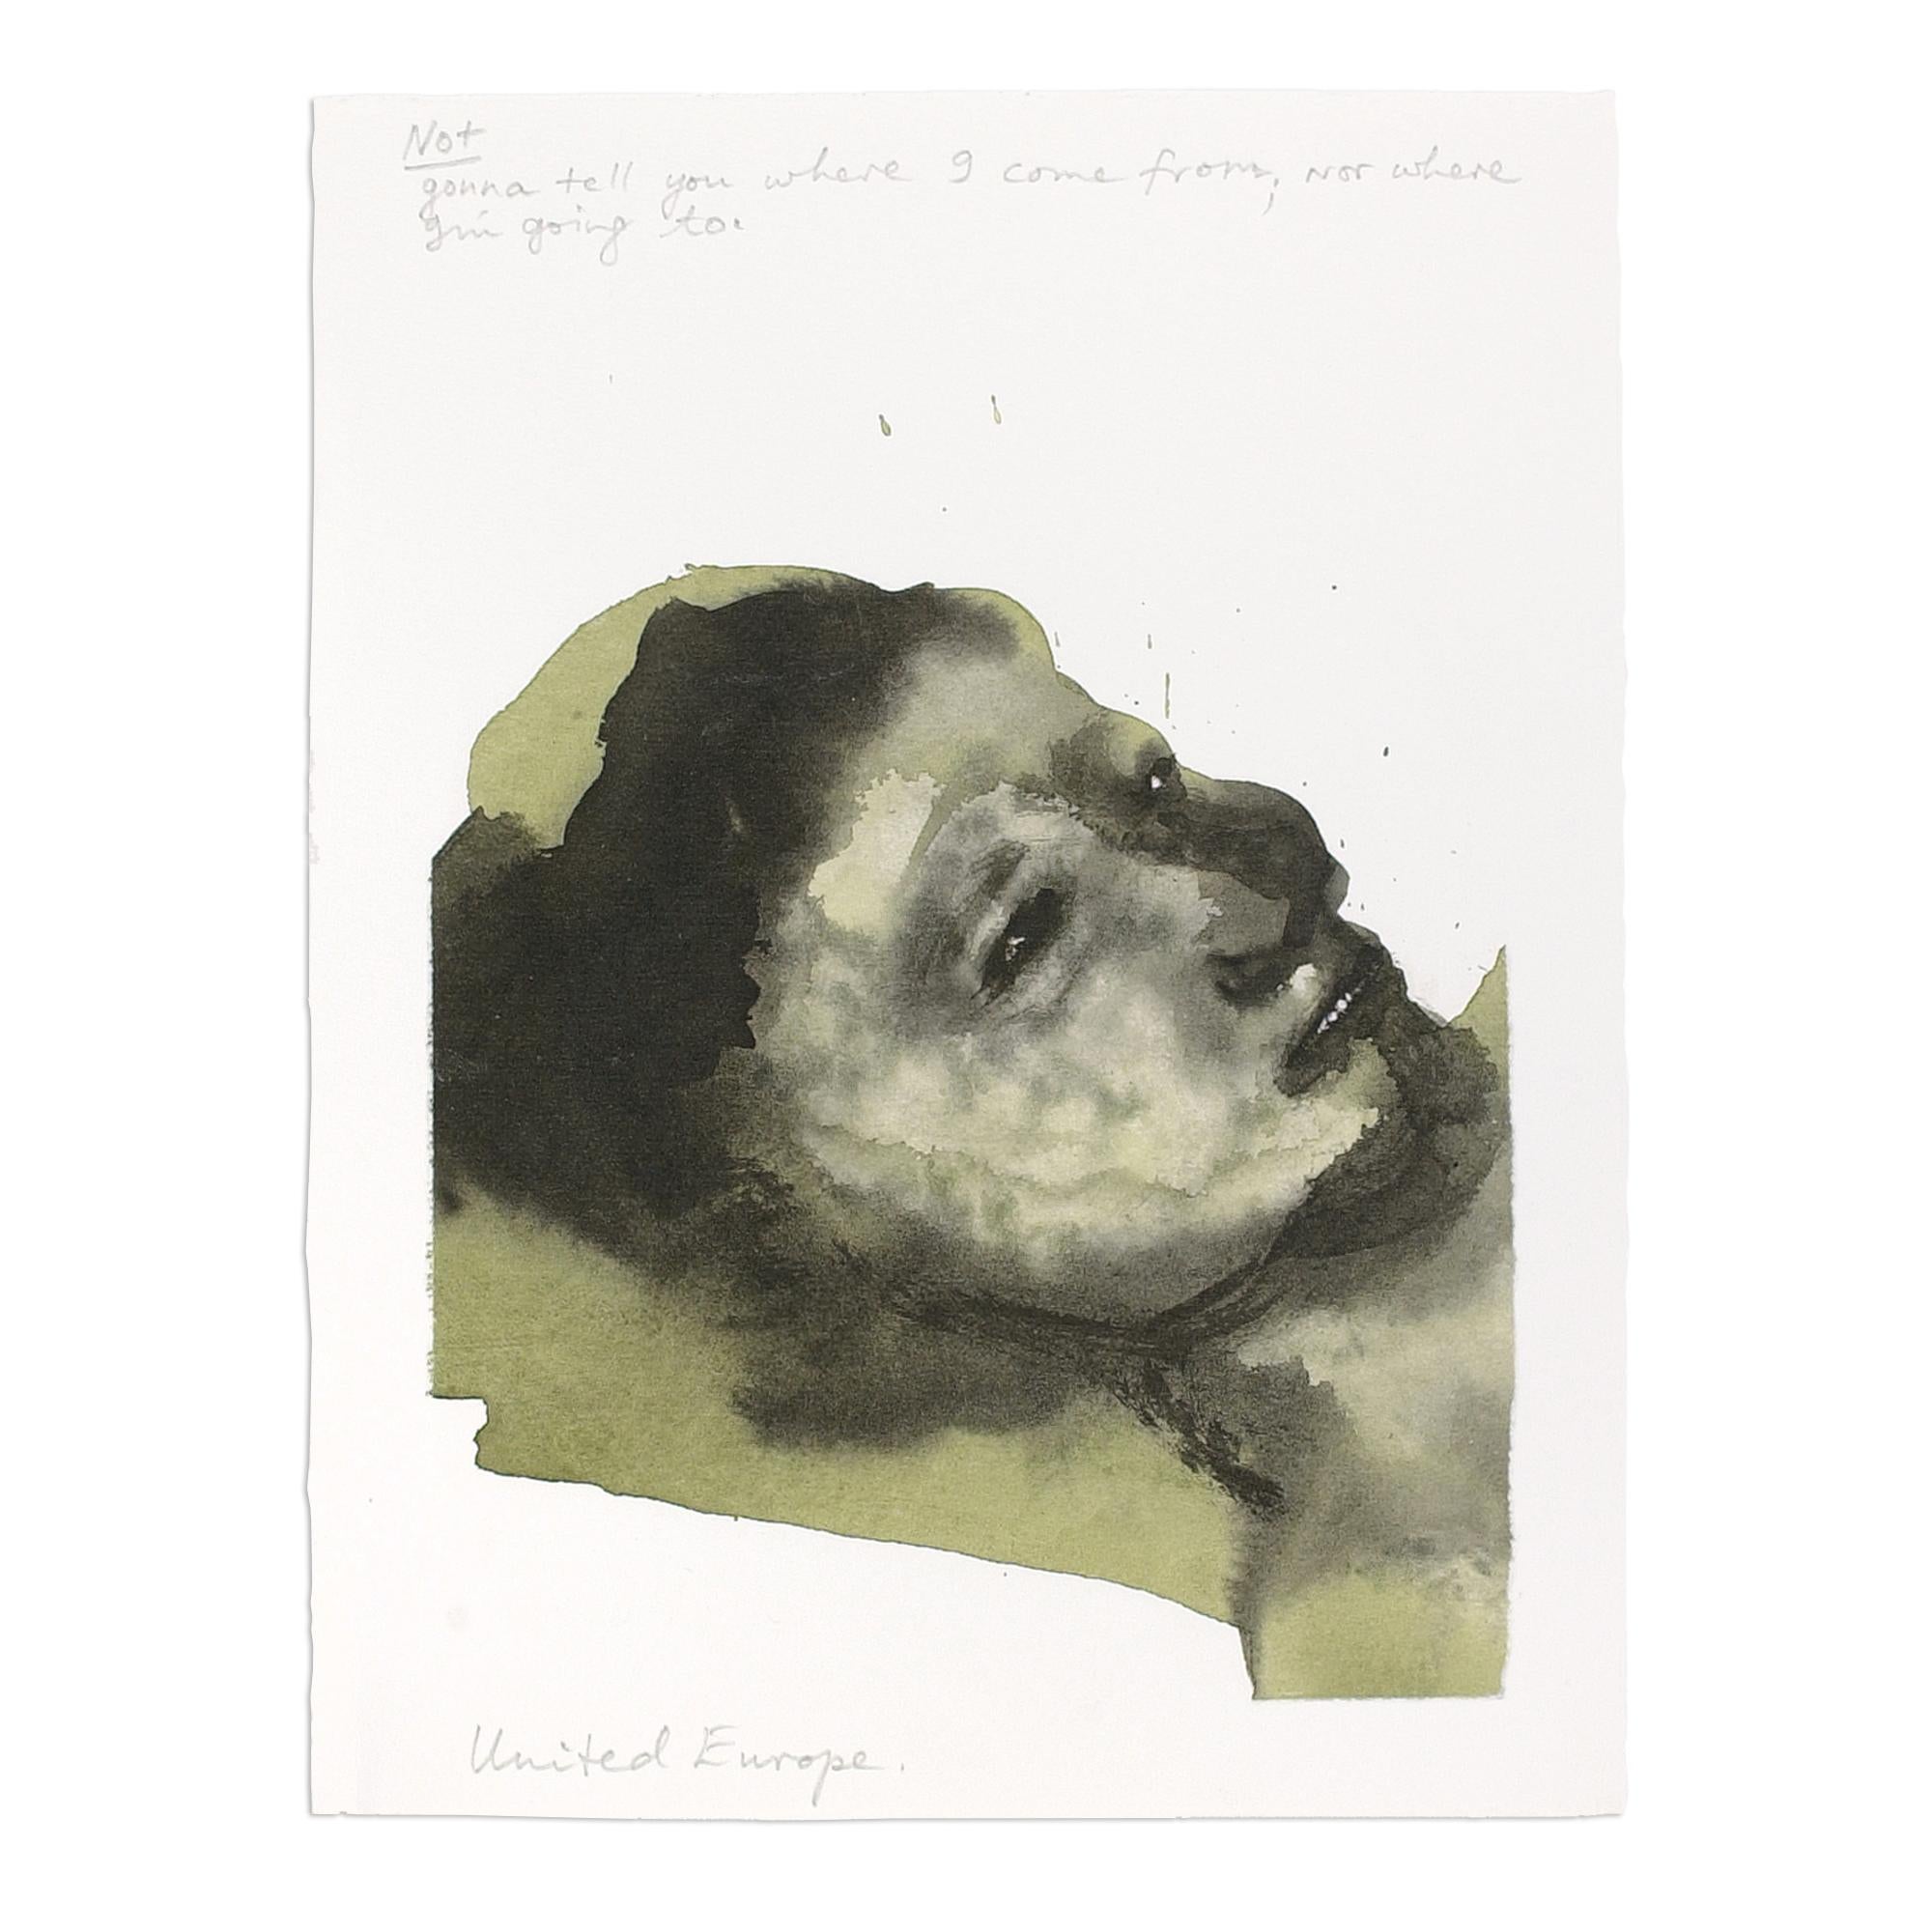 Marlene Dumas (Sud-Africaine, née en 1953)
Europe unie, 2003/05
Support : Impression pigmentaire numérique sur papier chiffon
Dimensions : 37 x 28 cm (14,5 x 11 pouces) : 37 x 28 cm (14.5 x 11 in)
Edition de 75 exemplaires : signés et numérotés à la